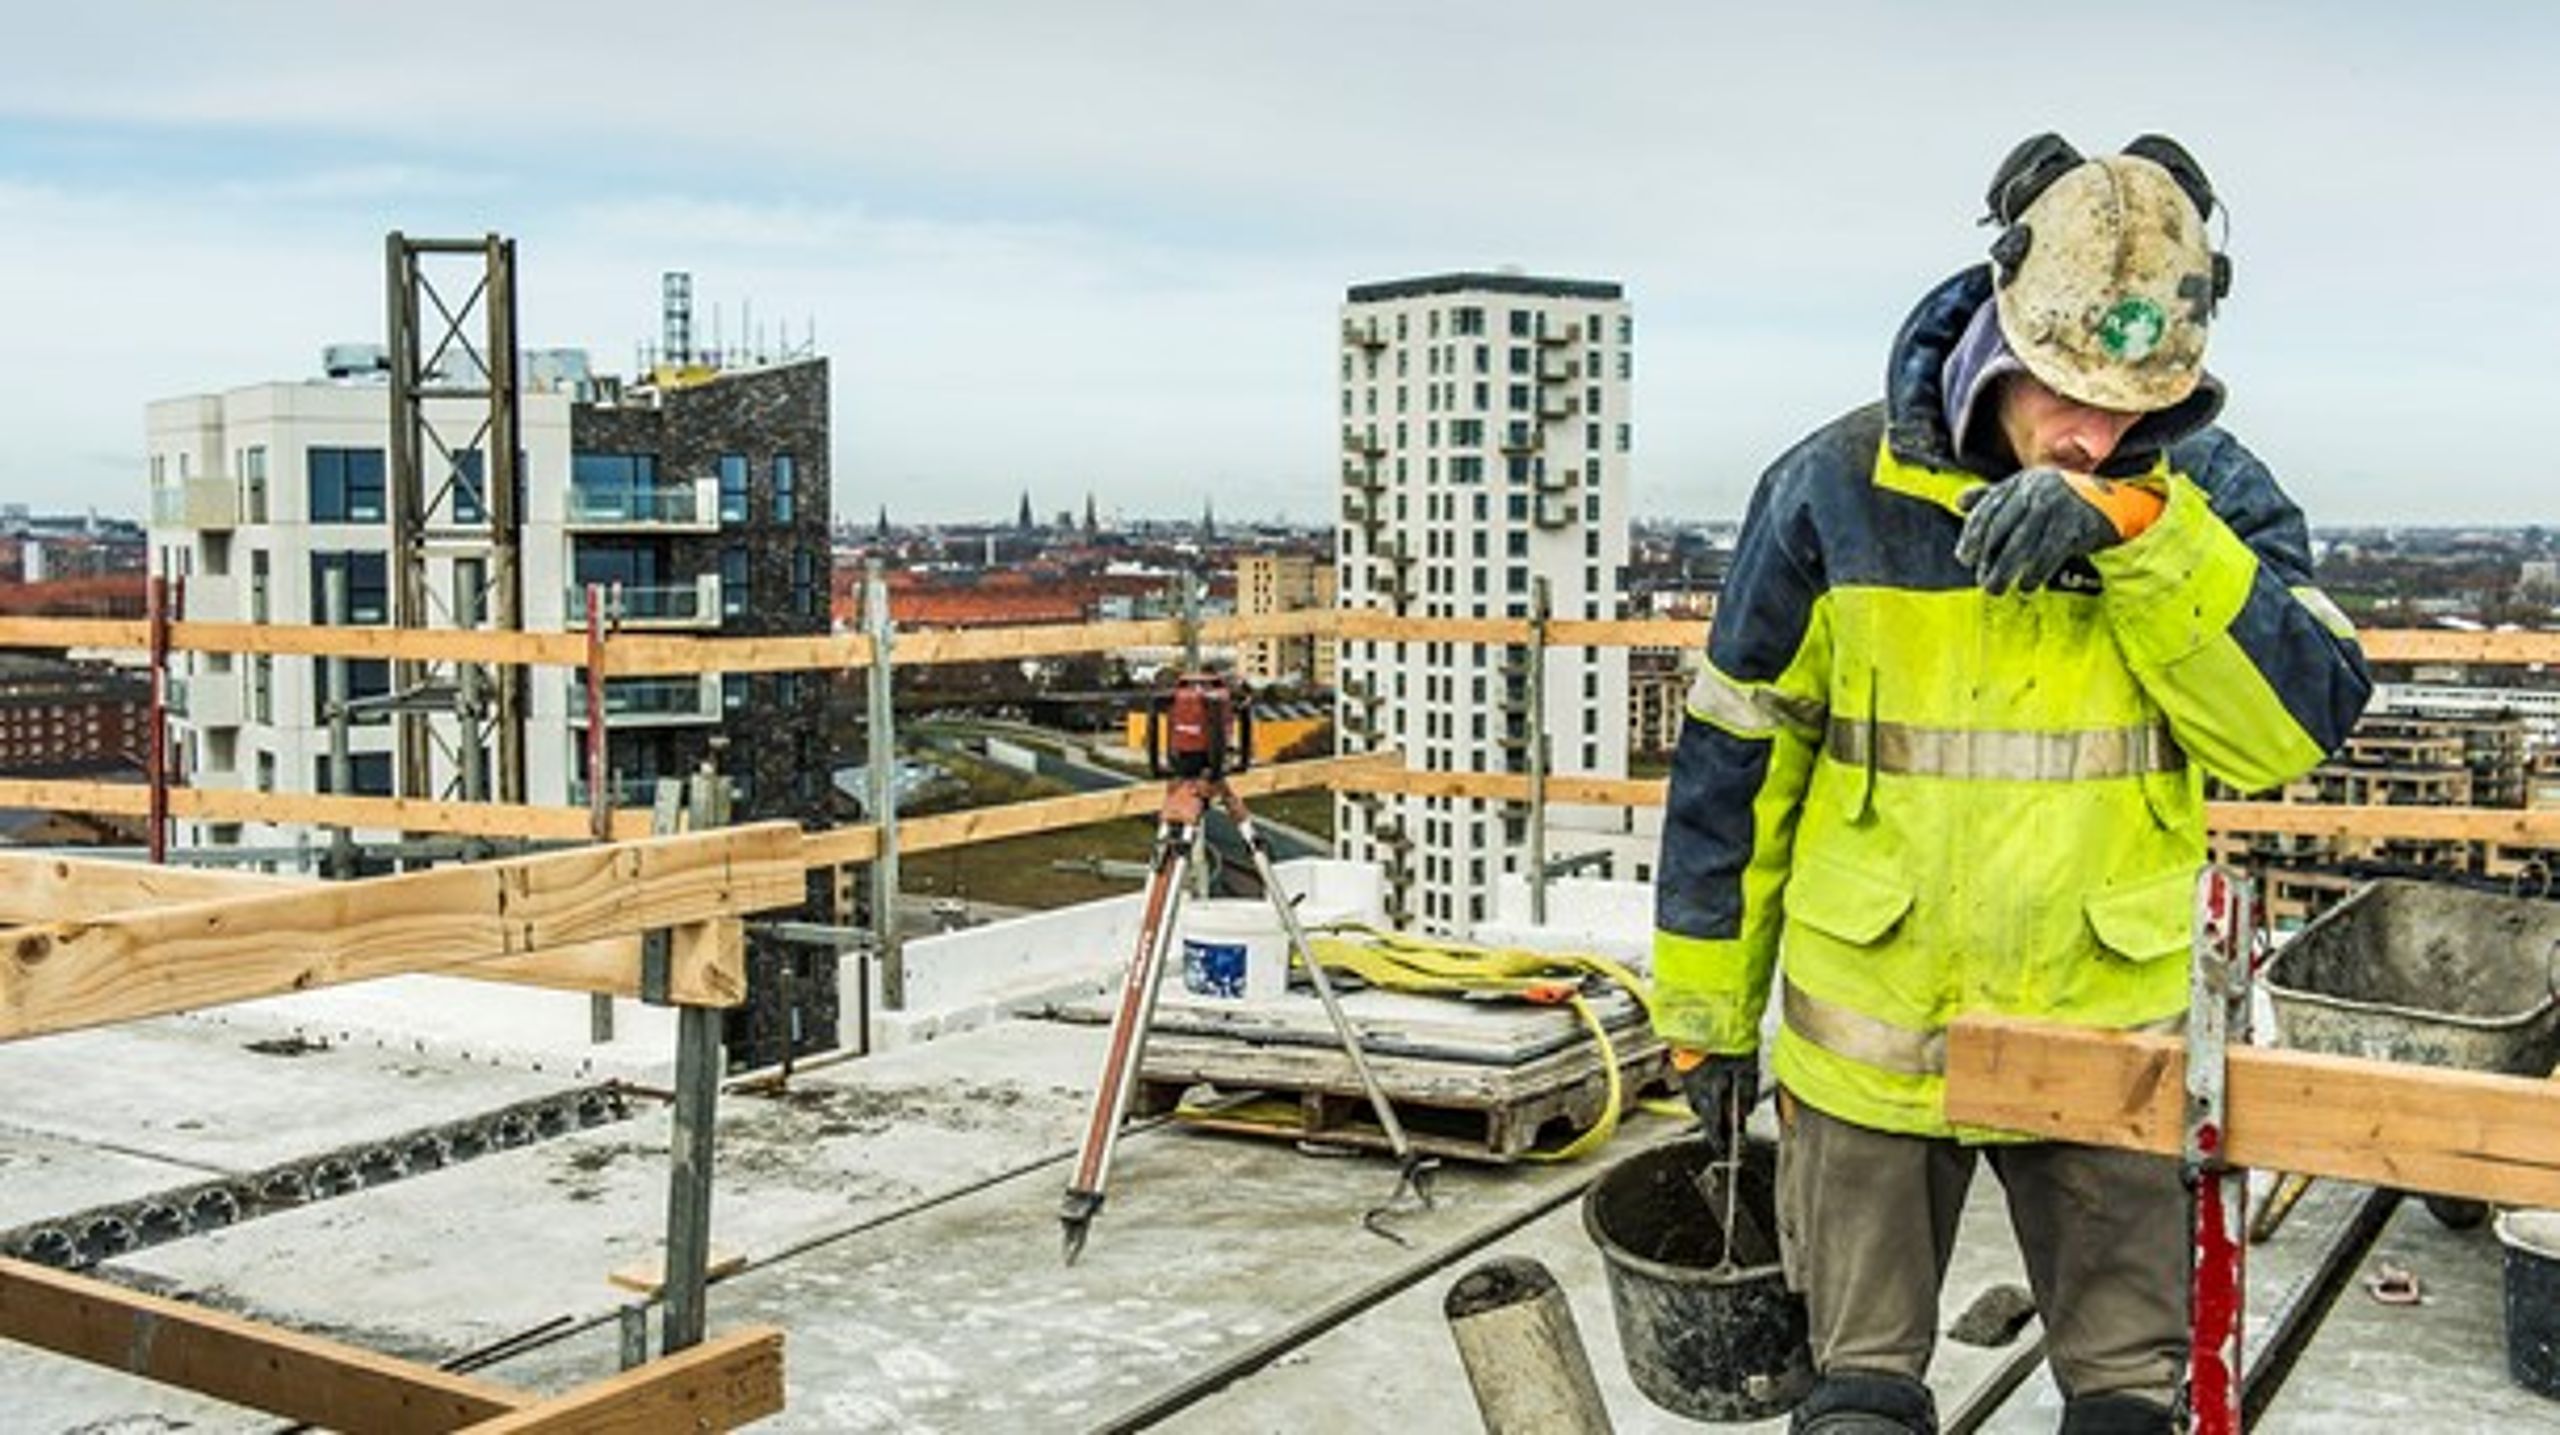 Kulturen på mange byggearbejdspladser holder ikke bare kvinder væk, men også flere unge mænd, skriver Vibeke Lydolph og Palle Adamsen.